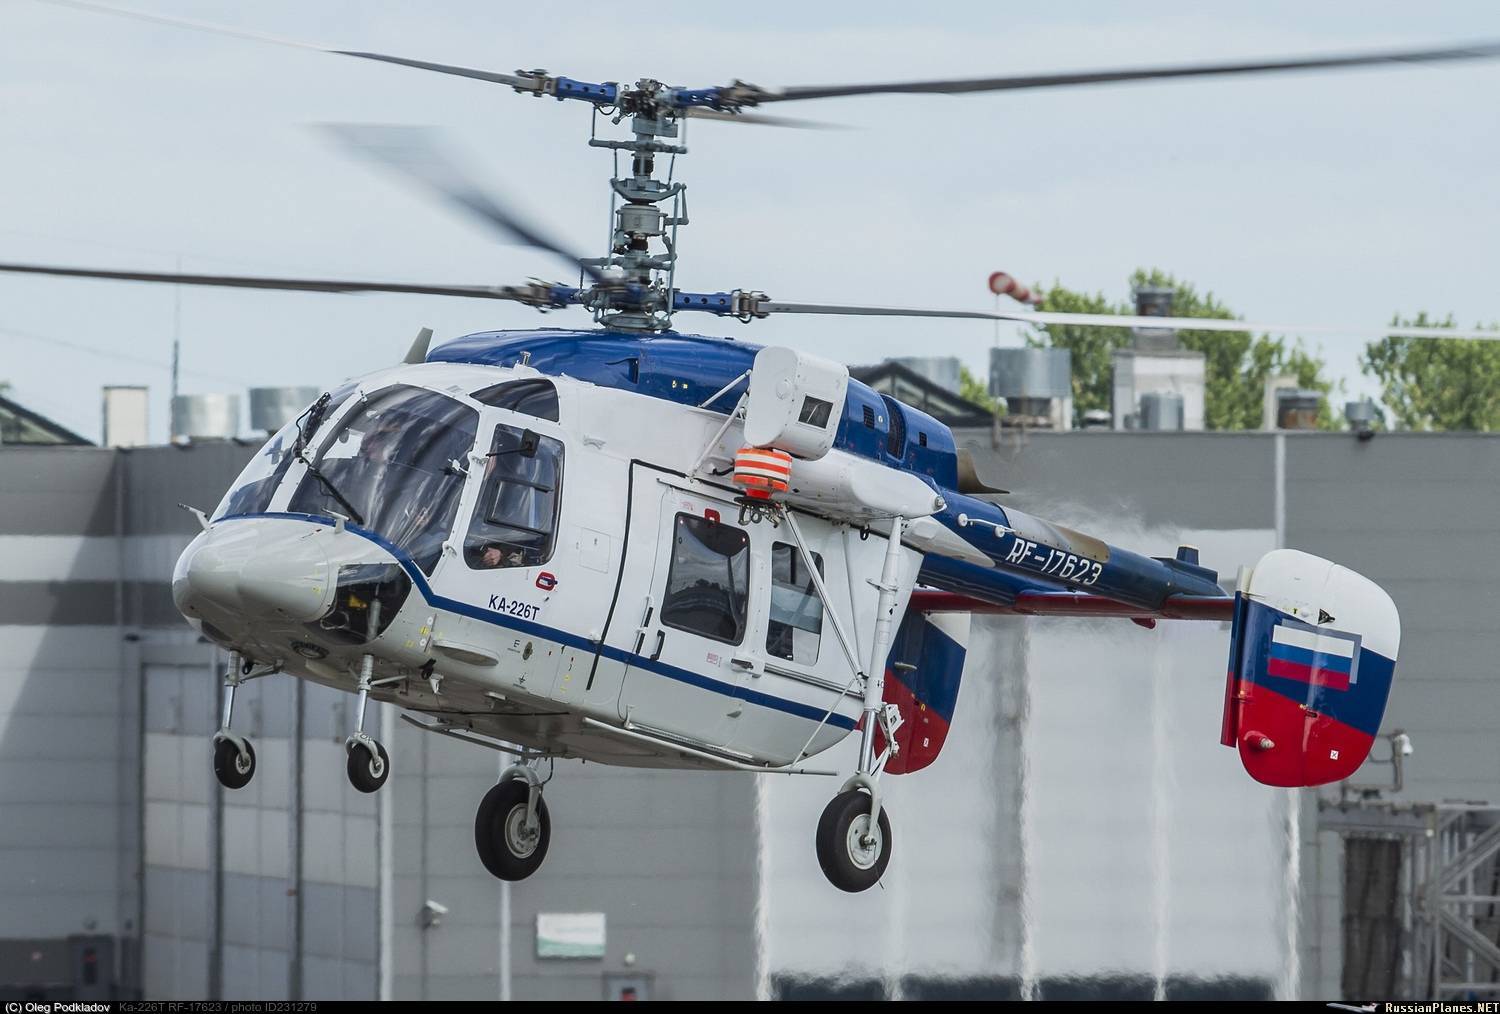 Статус лёгкого многоцелевого вертолета ка-226т